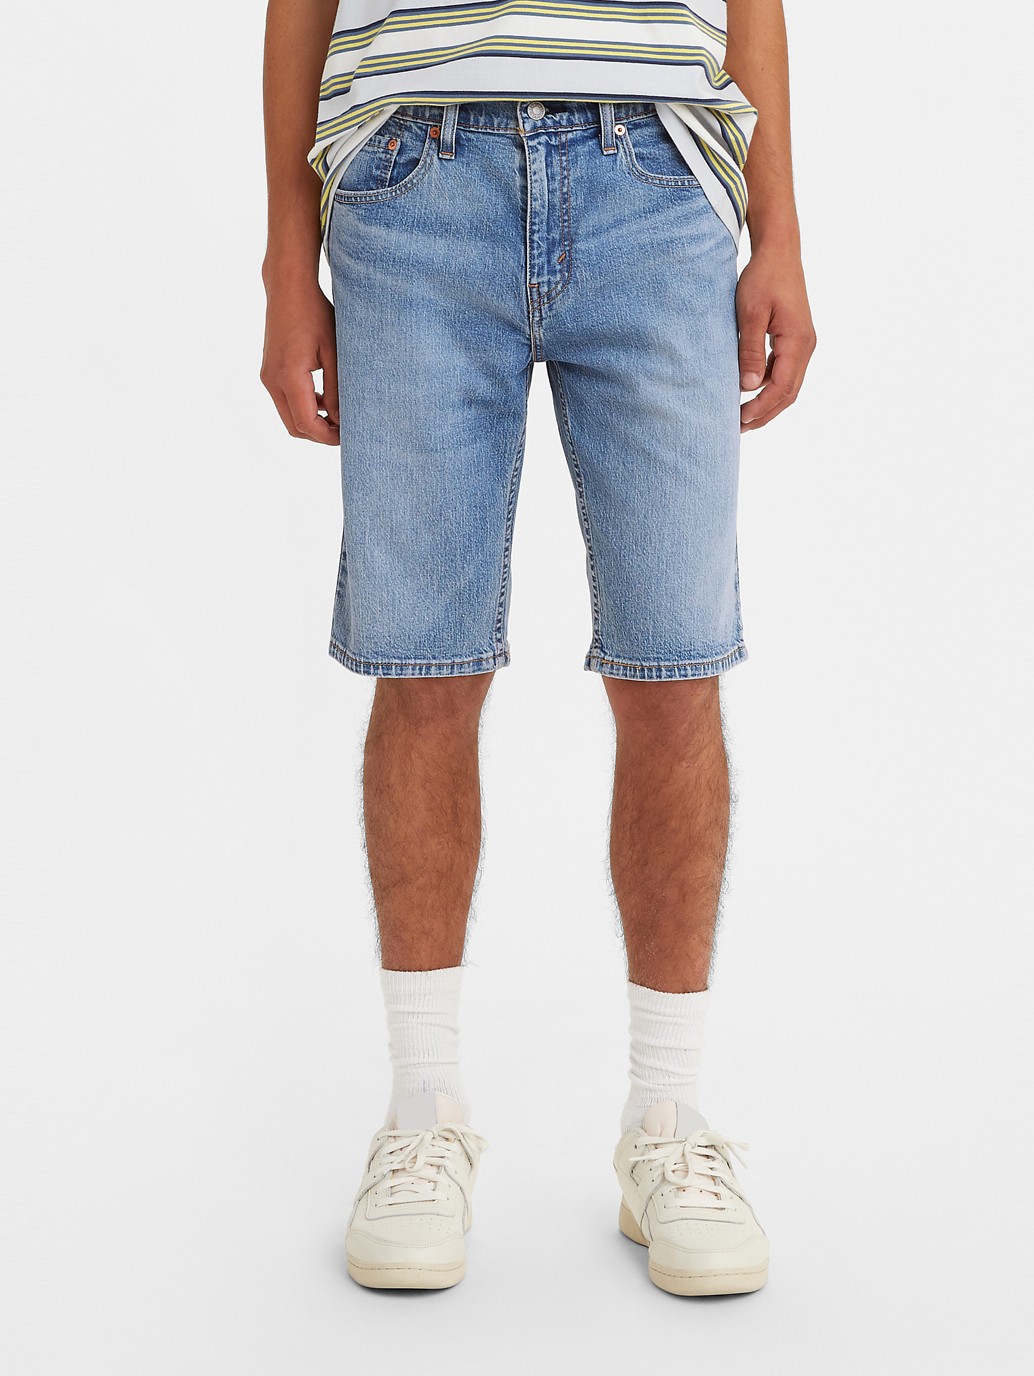 Actualizar 62+ imagen levi’s men’s jean shorts